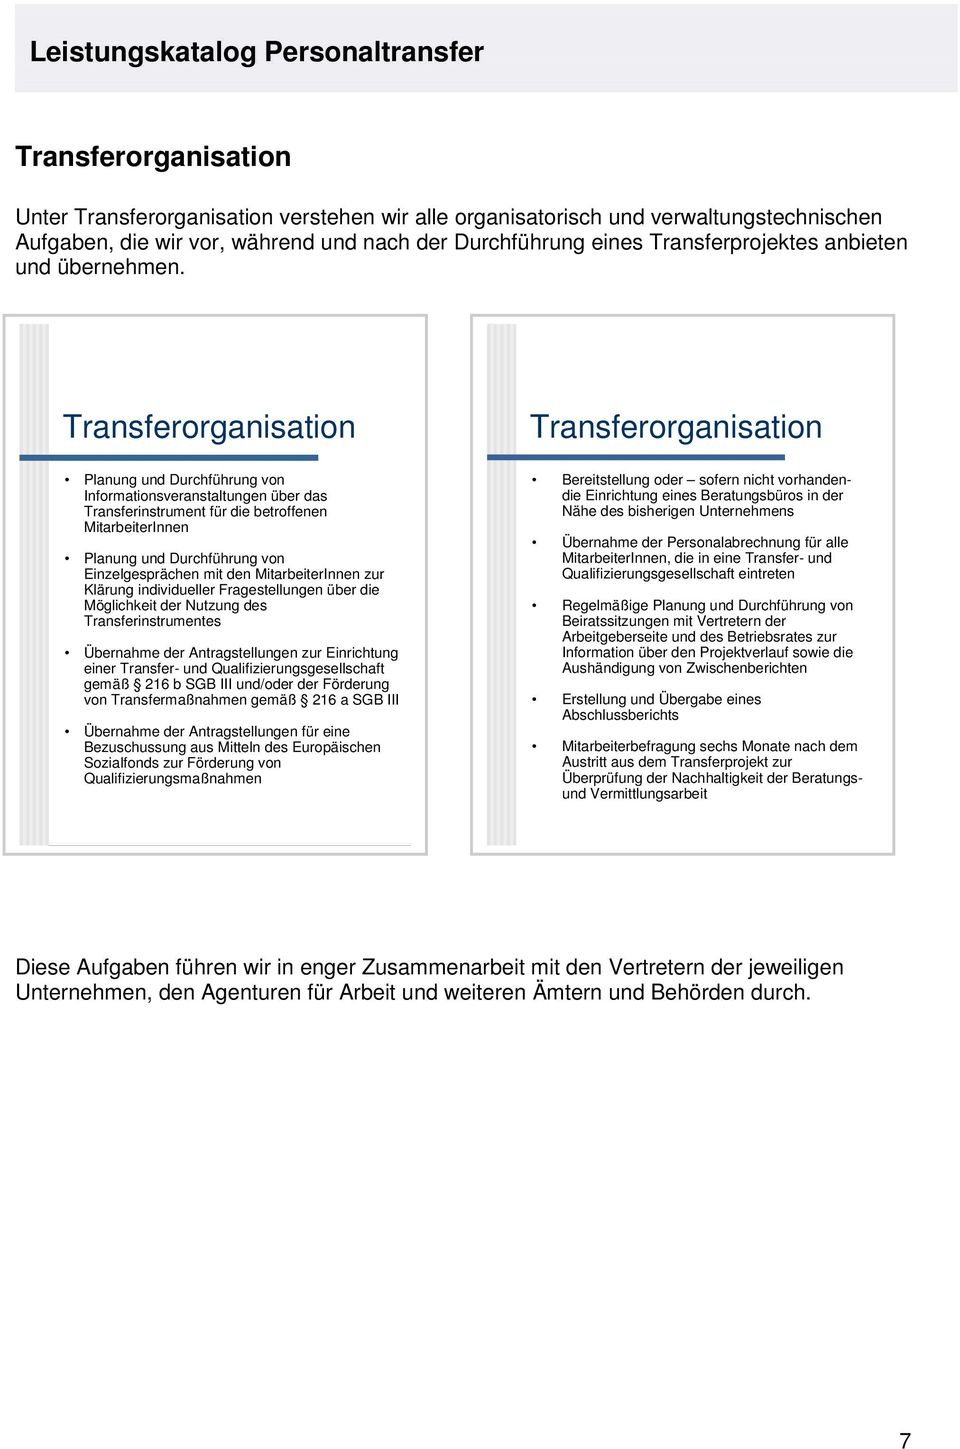 Transferorganisation Planung und Durchführung von Informationsveranstaltungen über das Transferinstrument für die betroffenen MitarbeiterInnen Planung und Durchführung von Einzelgesprächen mit den